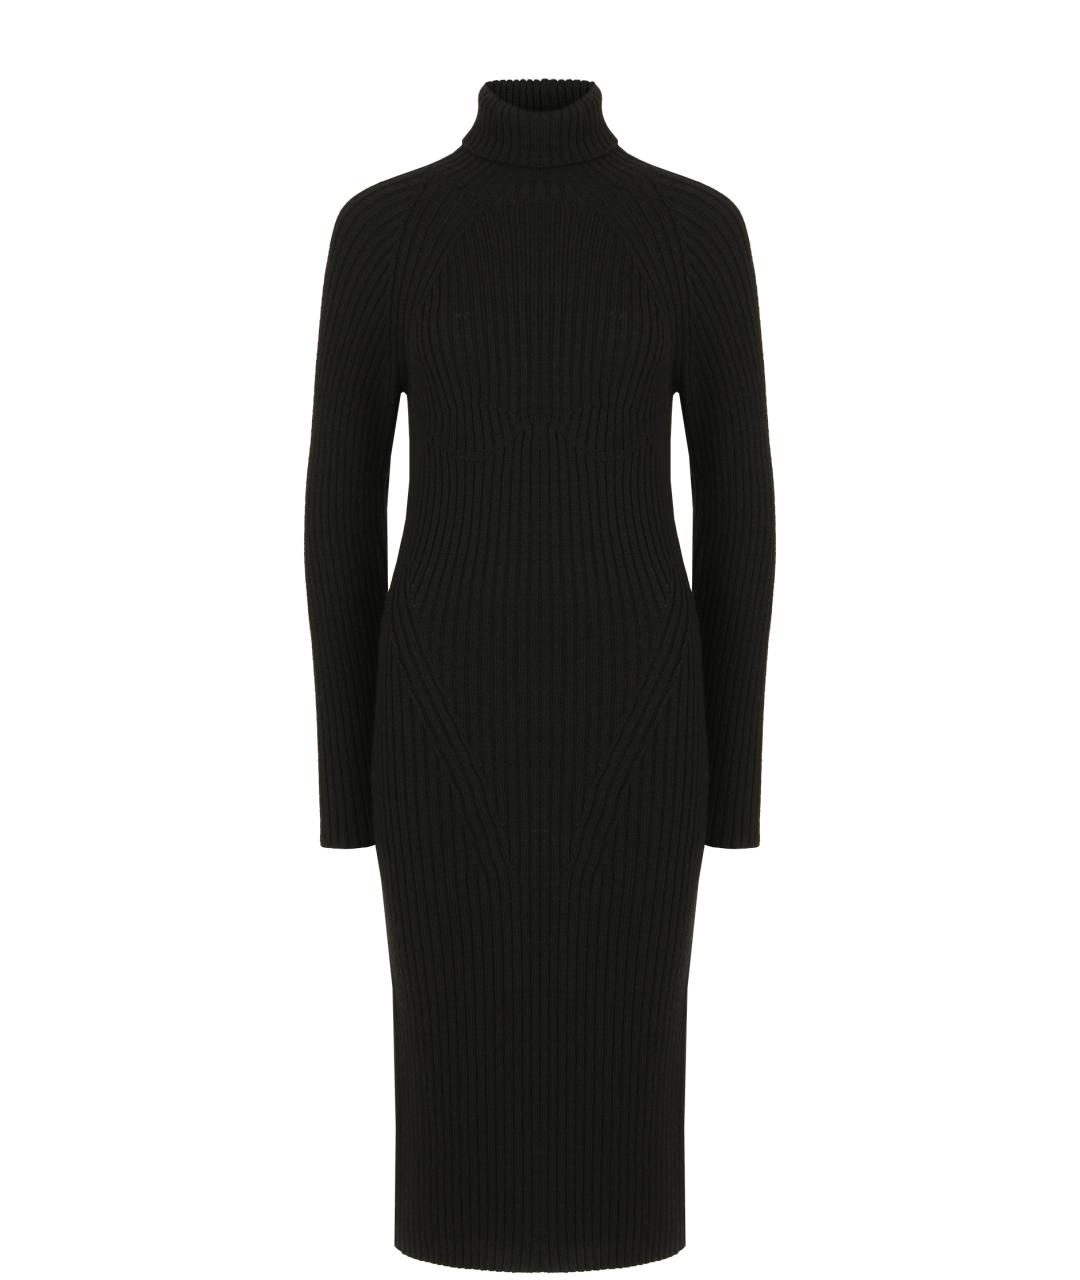 TOM FORD Черное шерстяное платье, фото 1